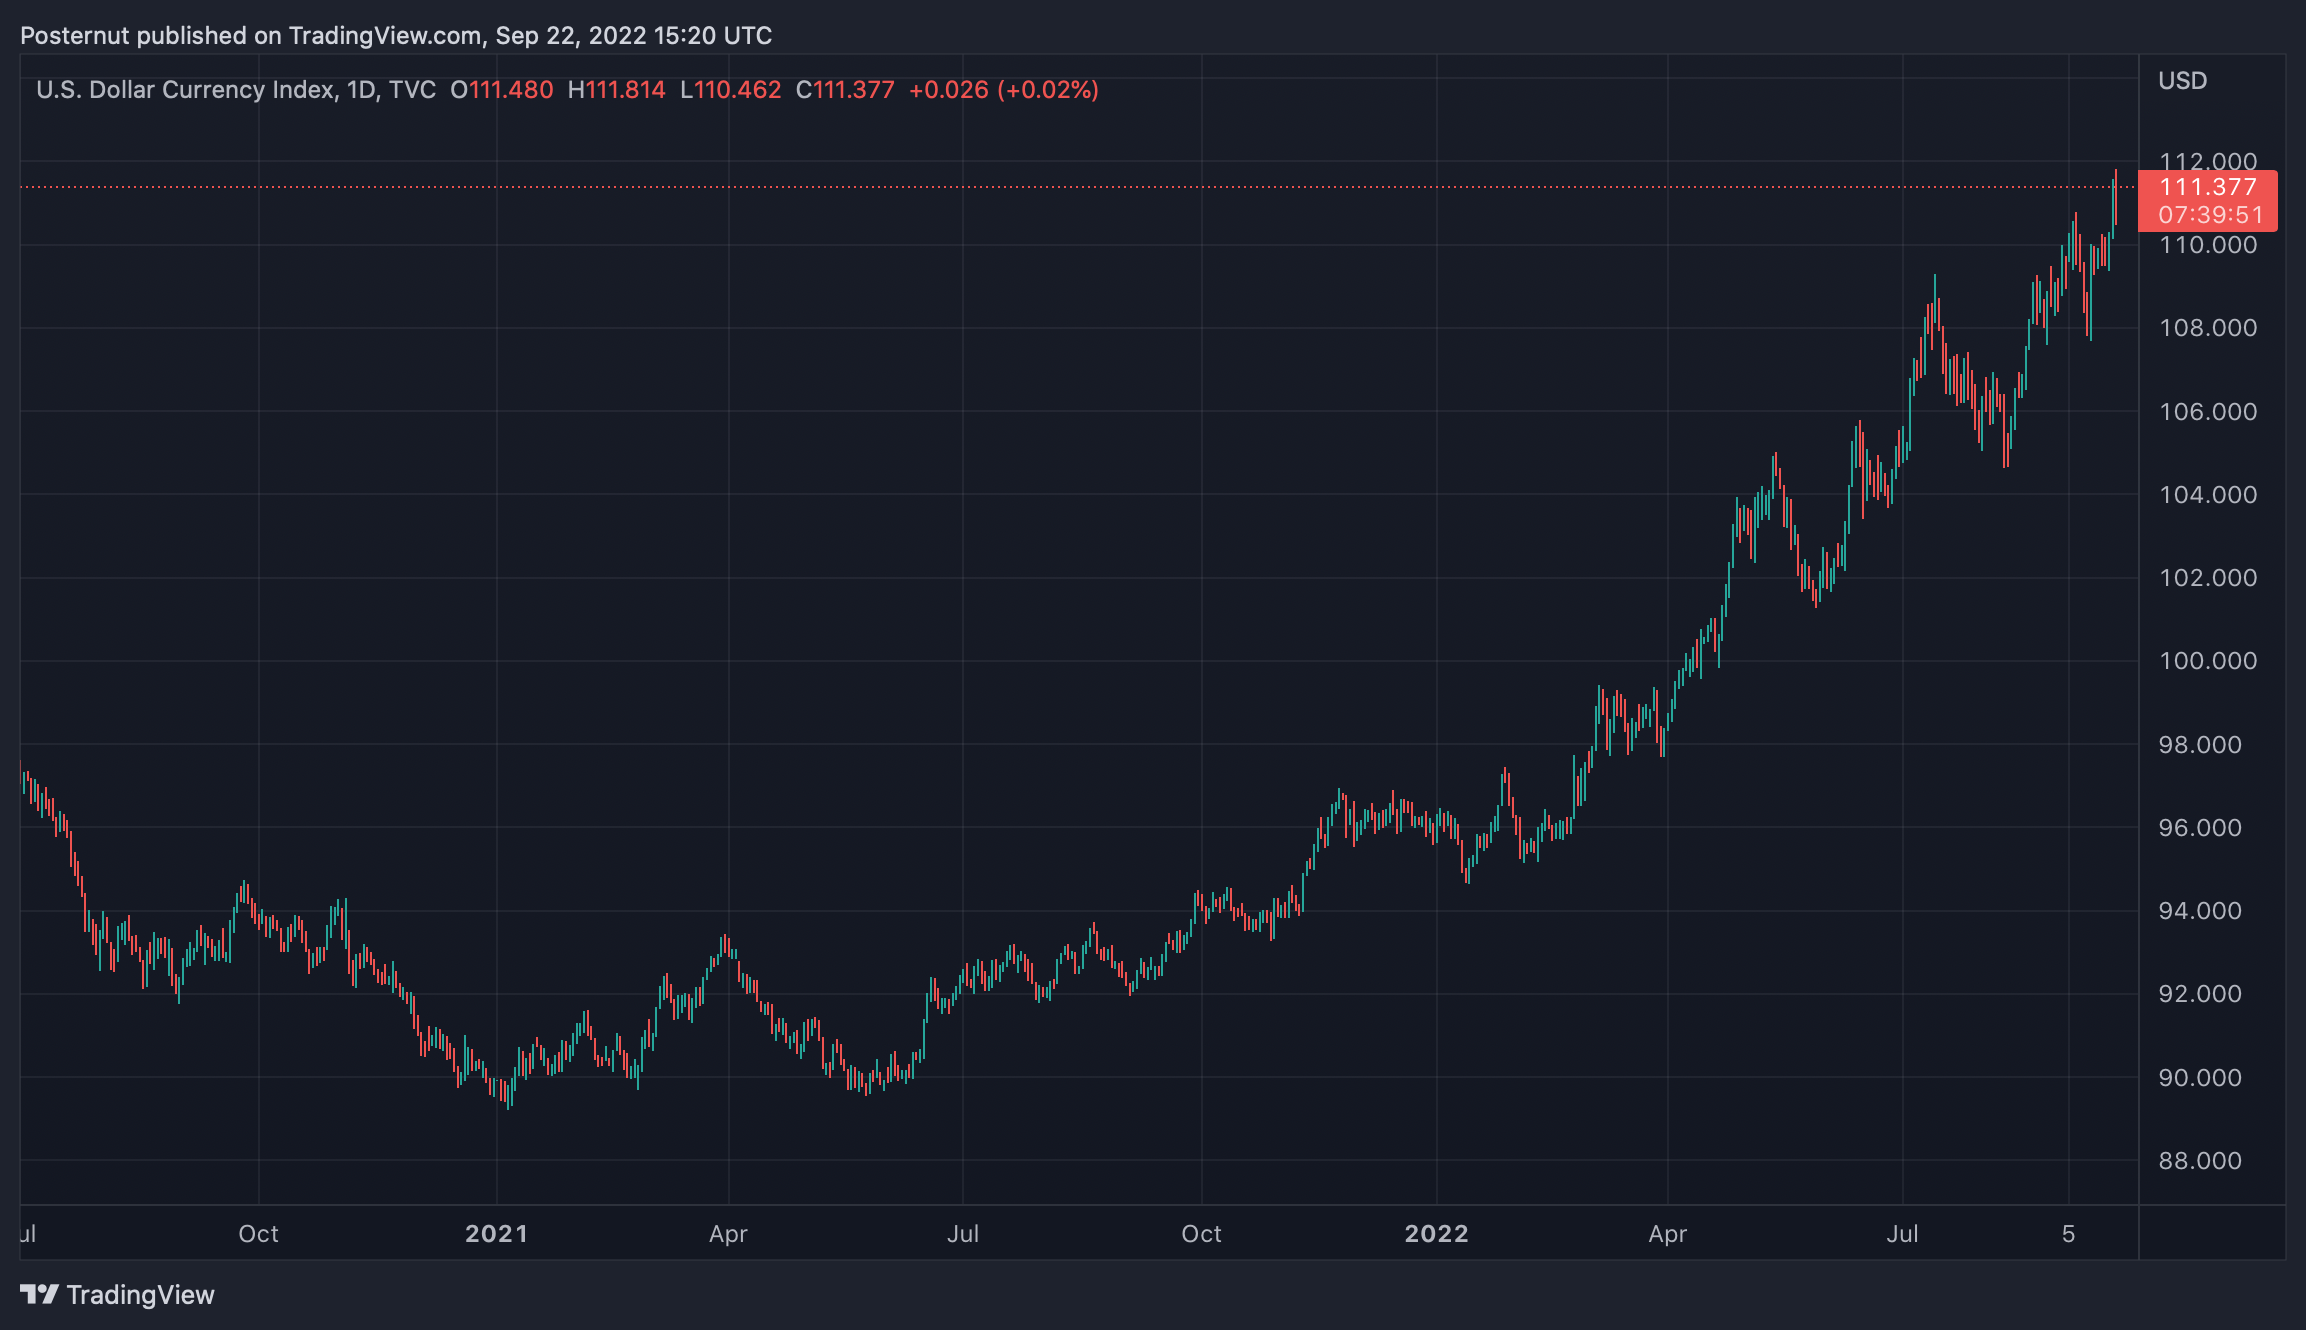 La Banque du Japon intervient sur les marchés des changes après que le yen a chuté à son plus bas niveau en 24 ans